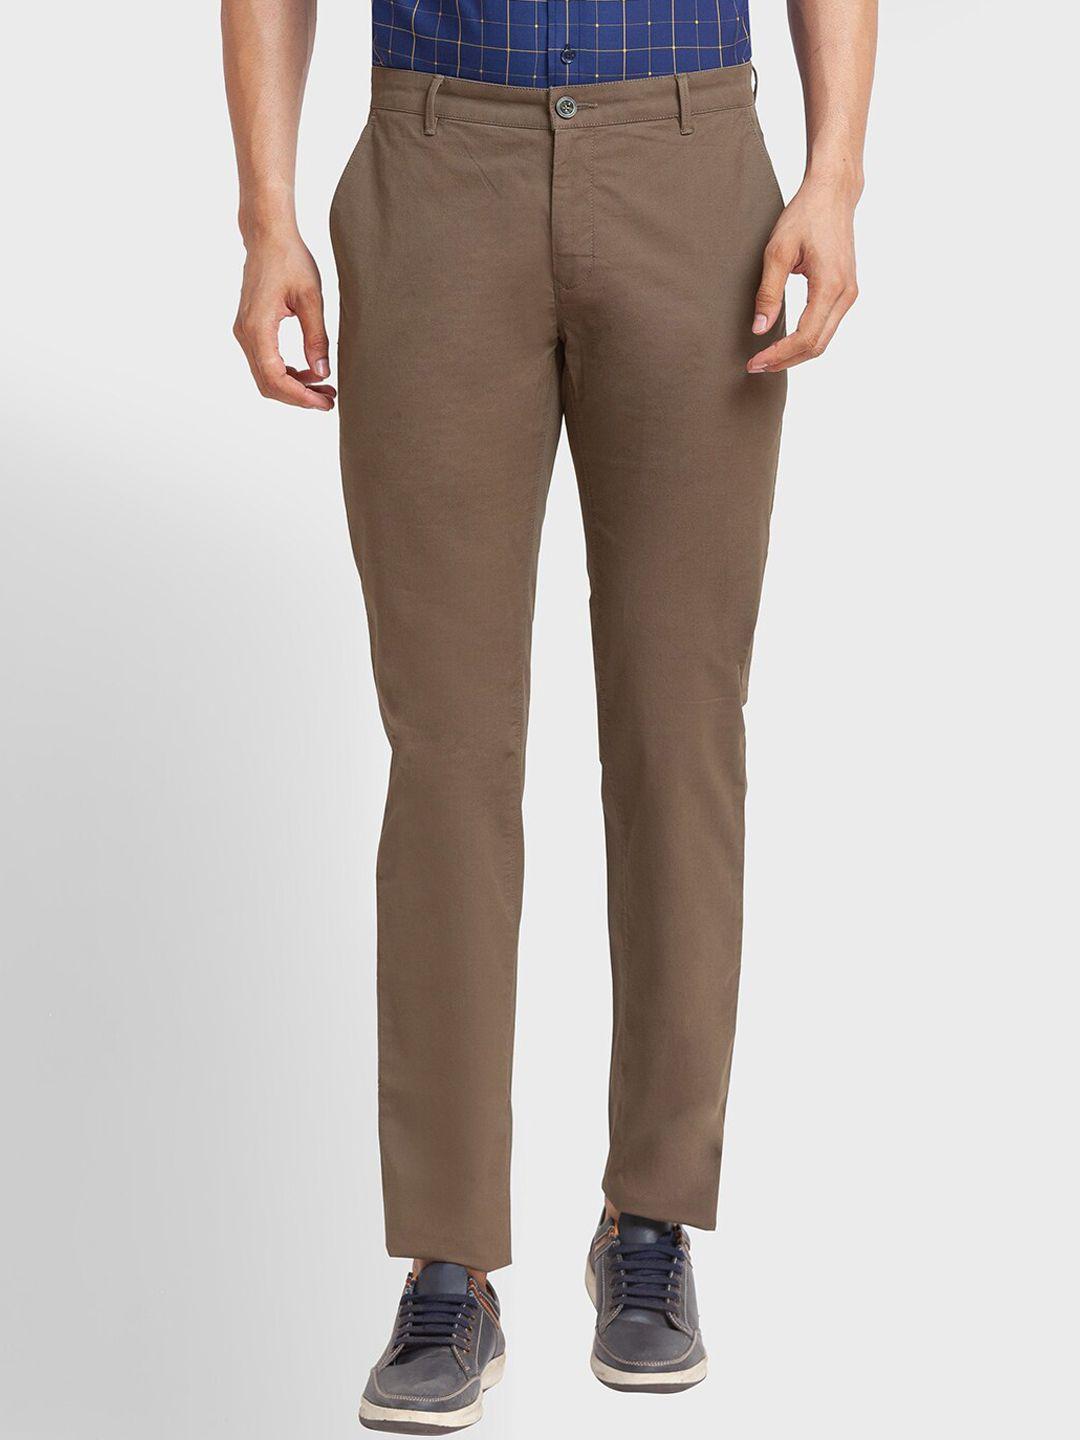 colorplus-men-cotton-straight-fit-trousers